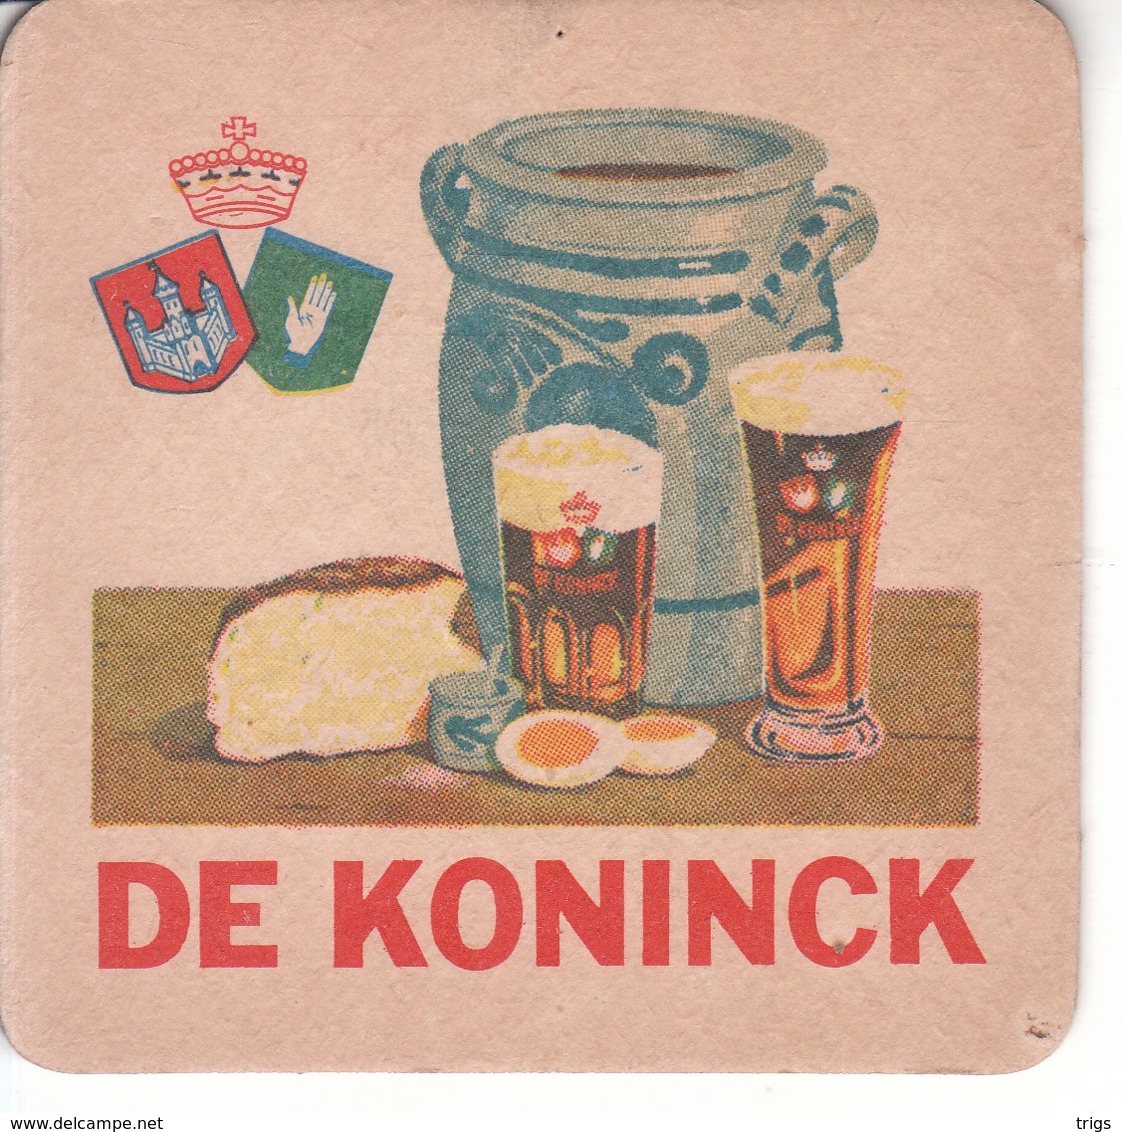 De Koninck - Sotto-boccale